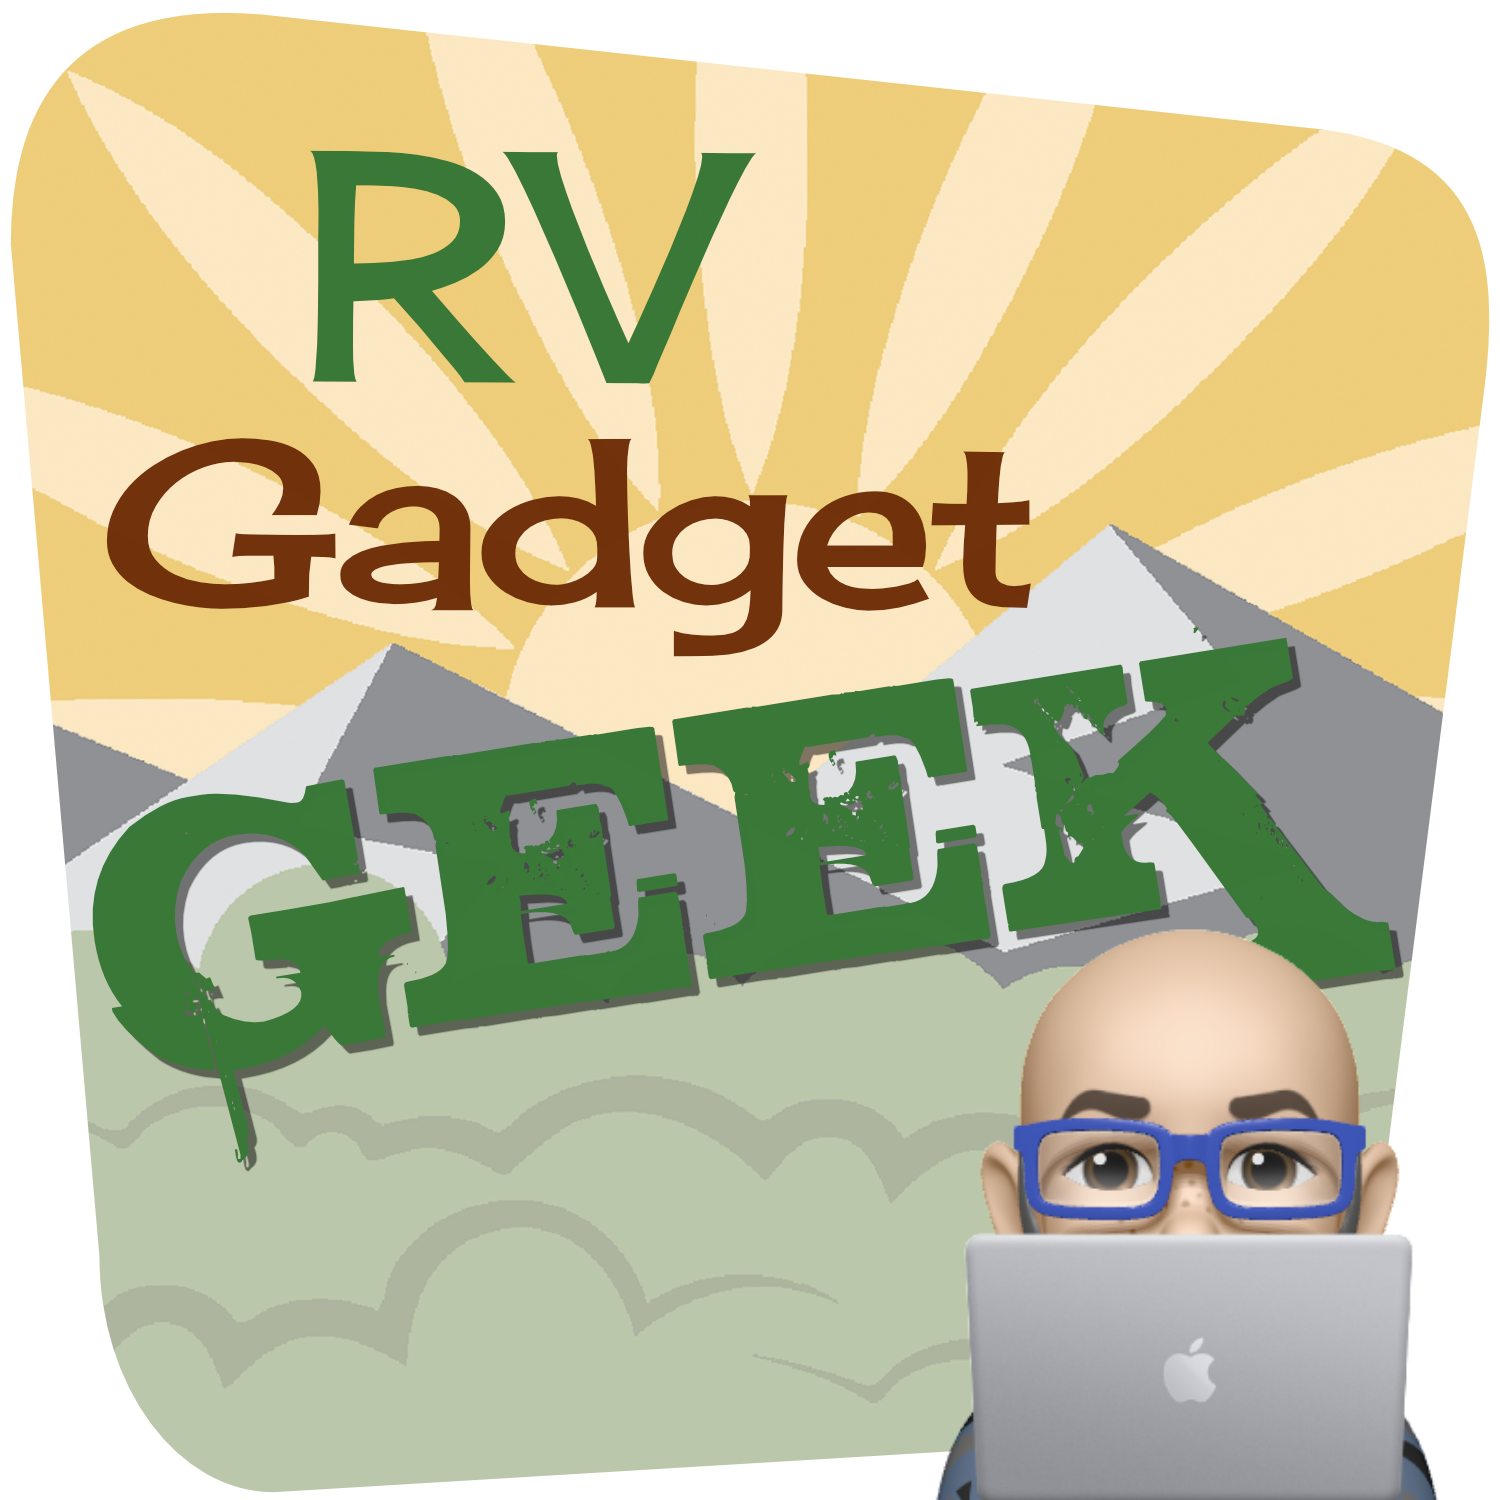 RV Gadget Geek